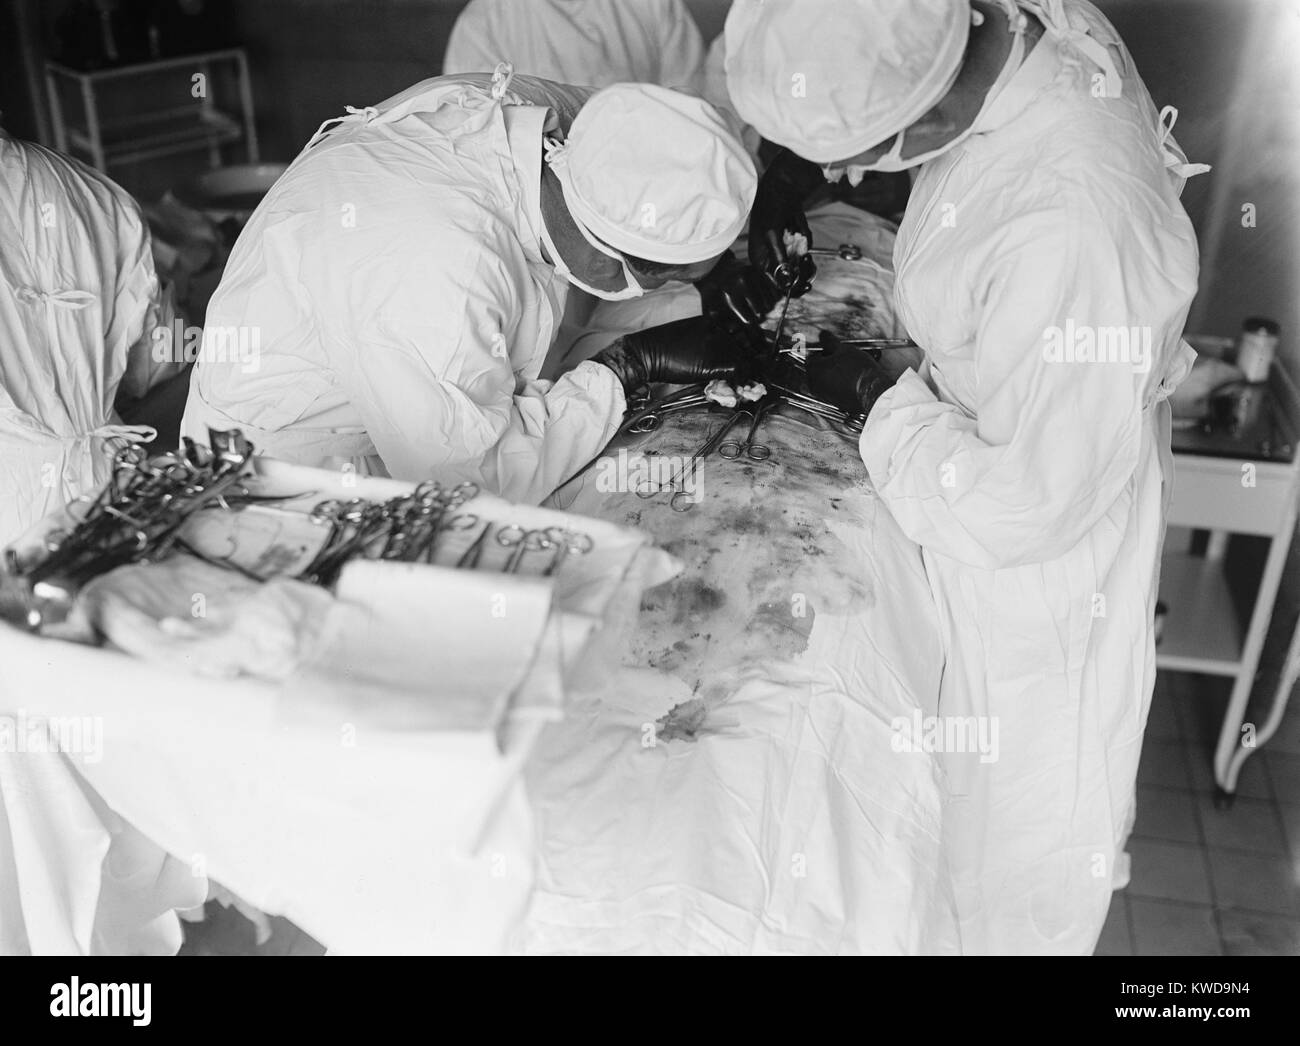 Die Teilnahme an Chirurgen lehnt sich eng über Abdomen des Patienten zu arbeiten. Das OP-Feld ist mit Blut befleckt. 1922 in einem Krankenhaus in Washington, D.C. (BSLOC 2016 10 36) Stockfoto